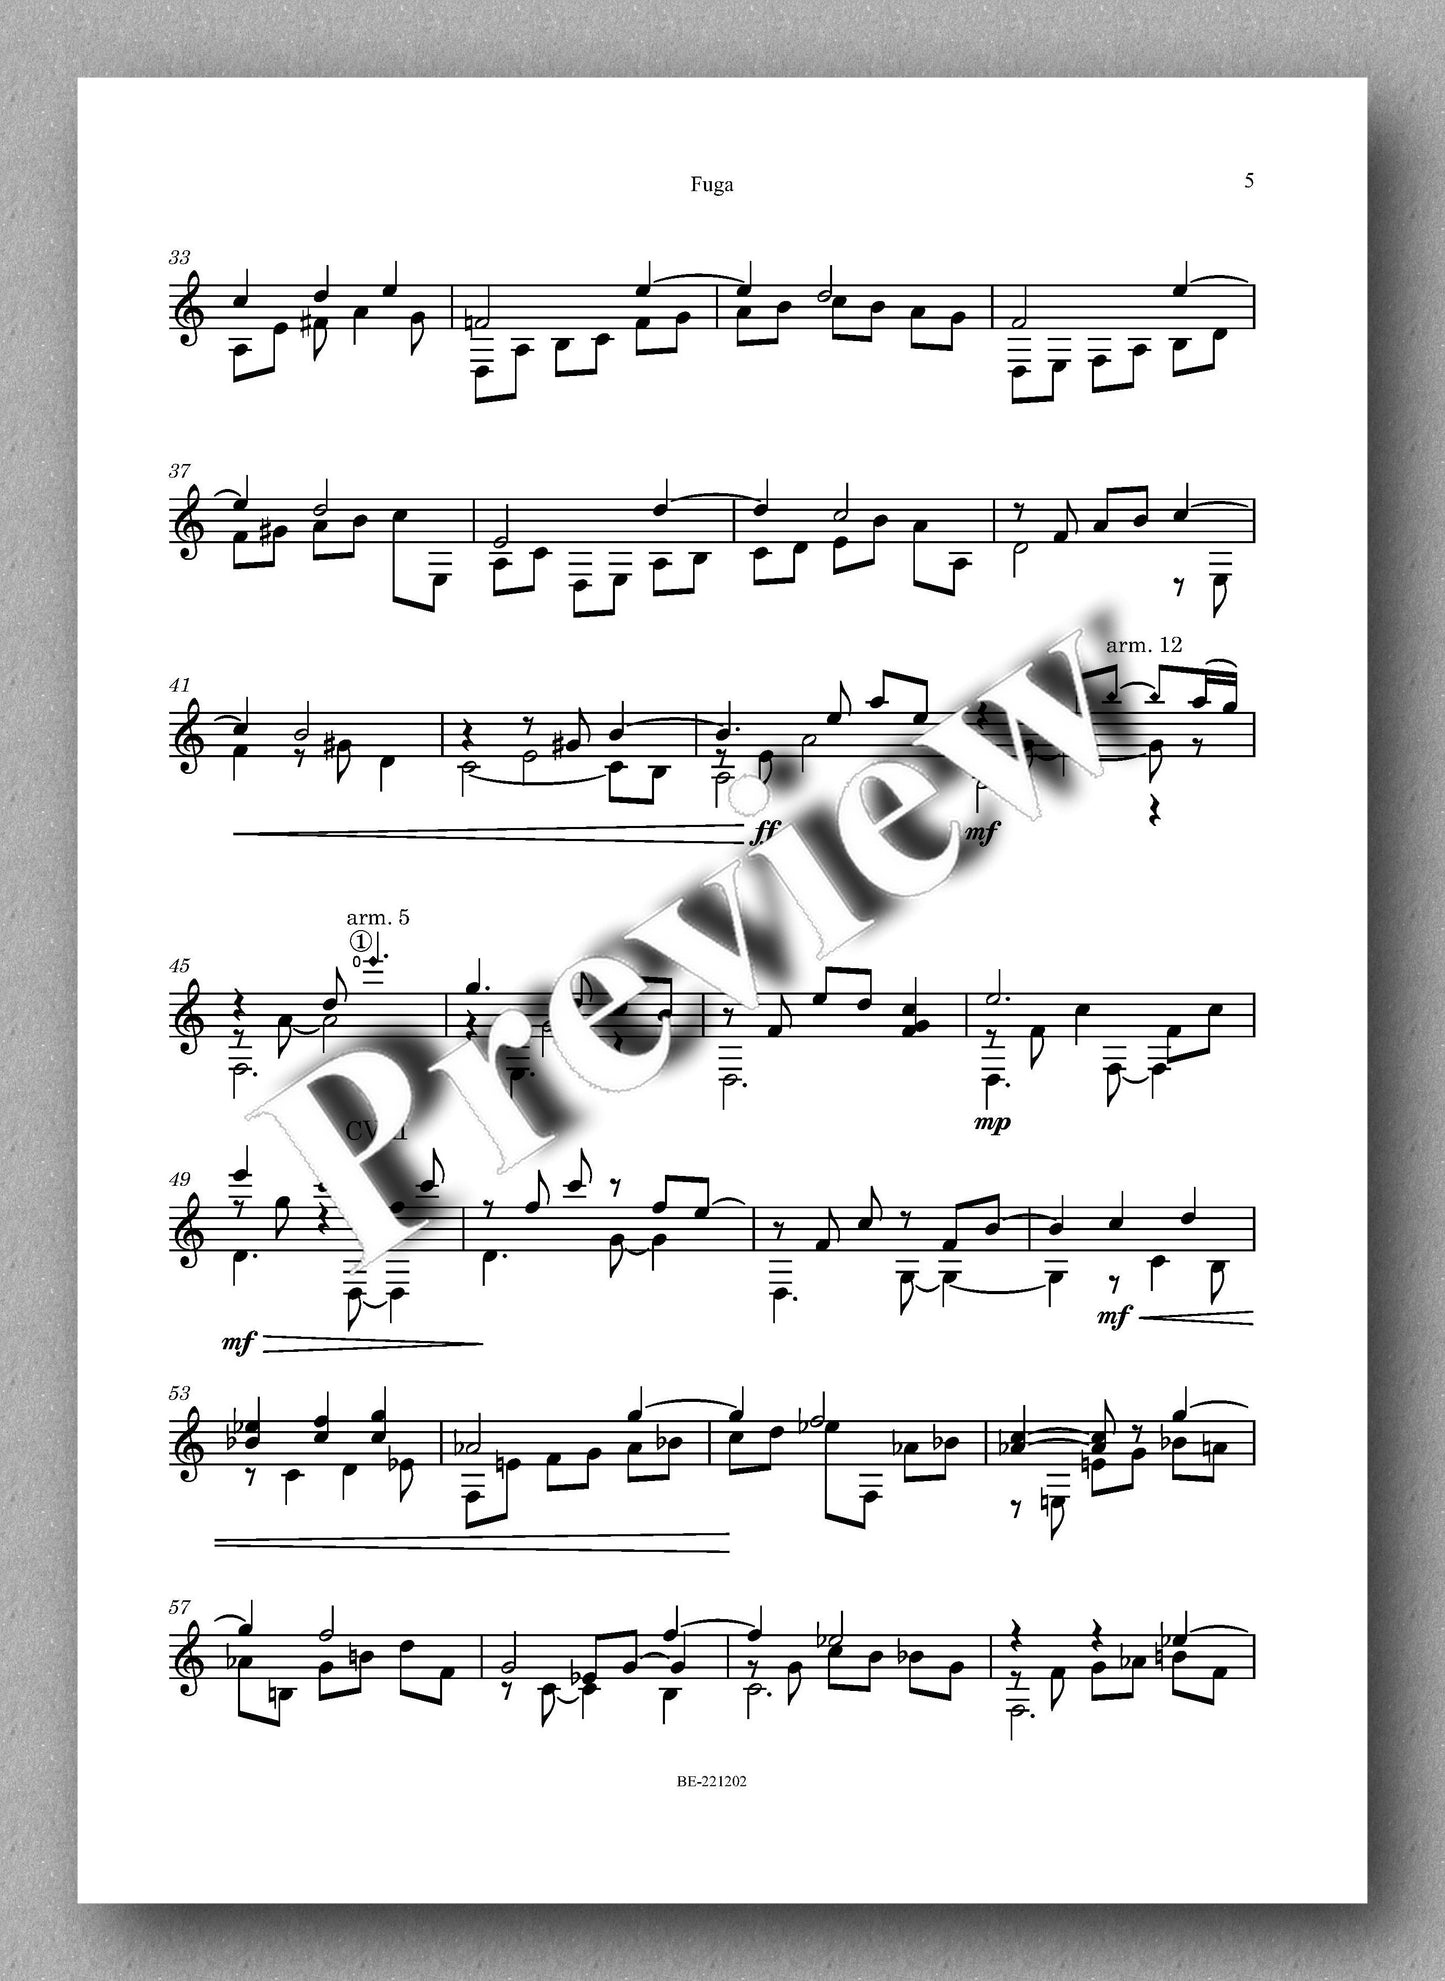 Juan Erena, Fugasobre un tema de Bill Evans - preview of the music score 2